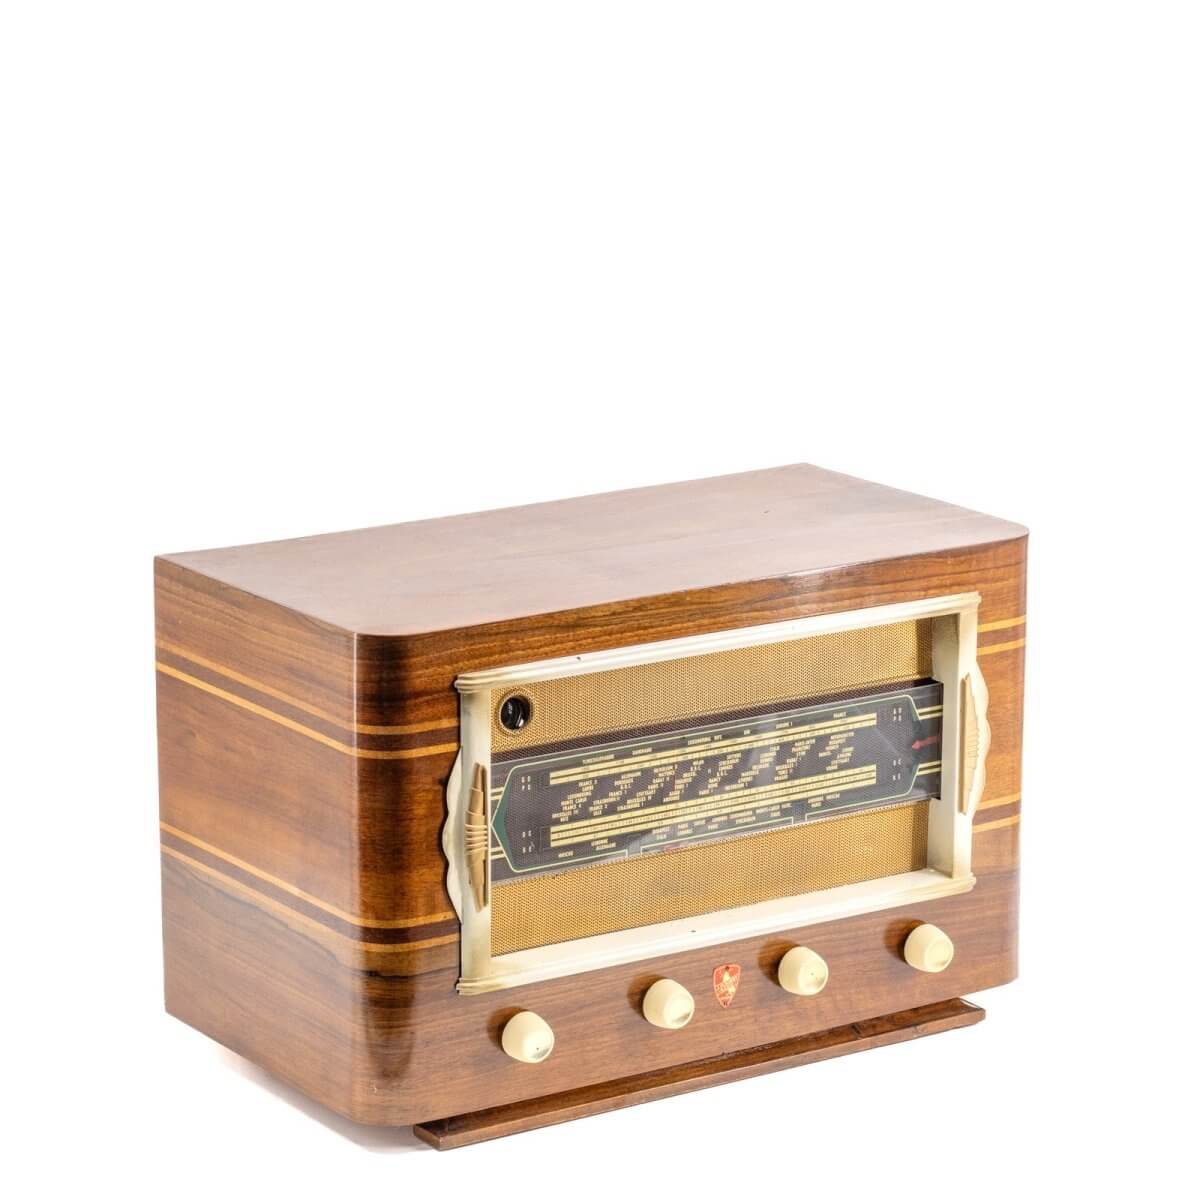 Radio Bluetooth Fleriet Vintage 40’S enceinte connectée française haut de gamme absolument prodige radio vintage